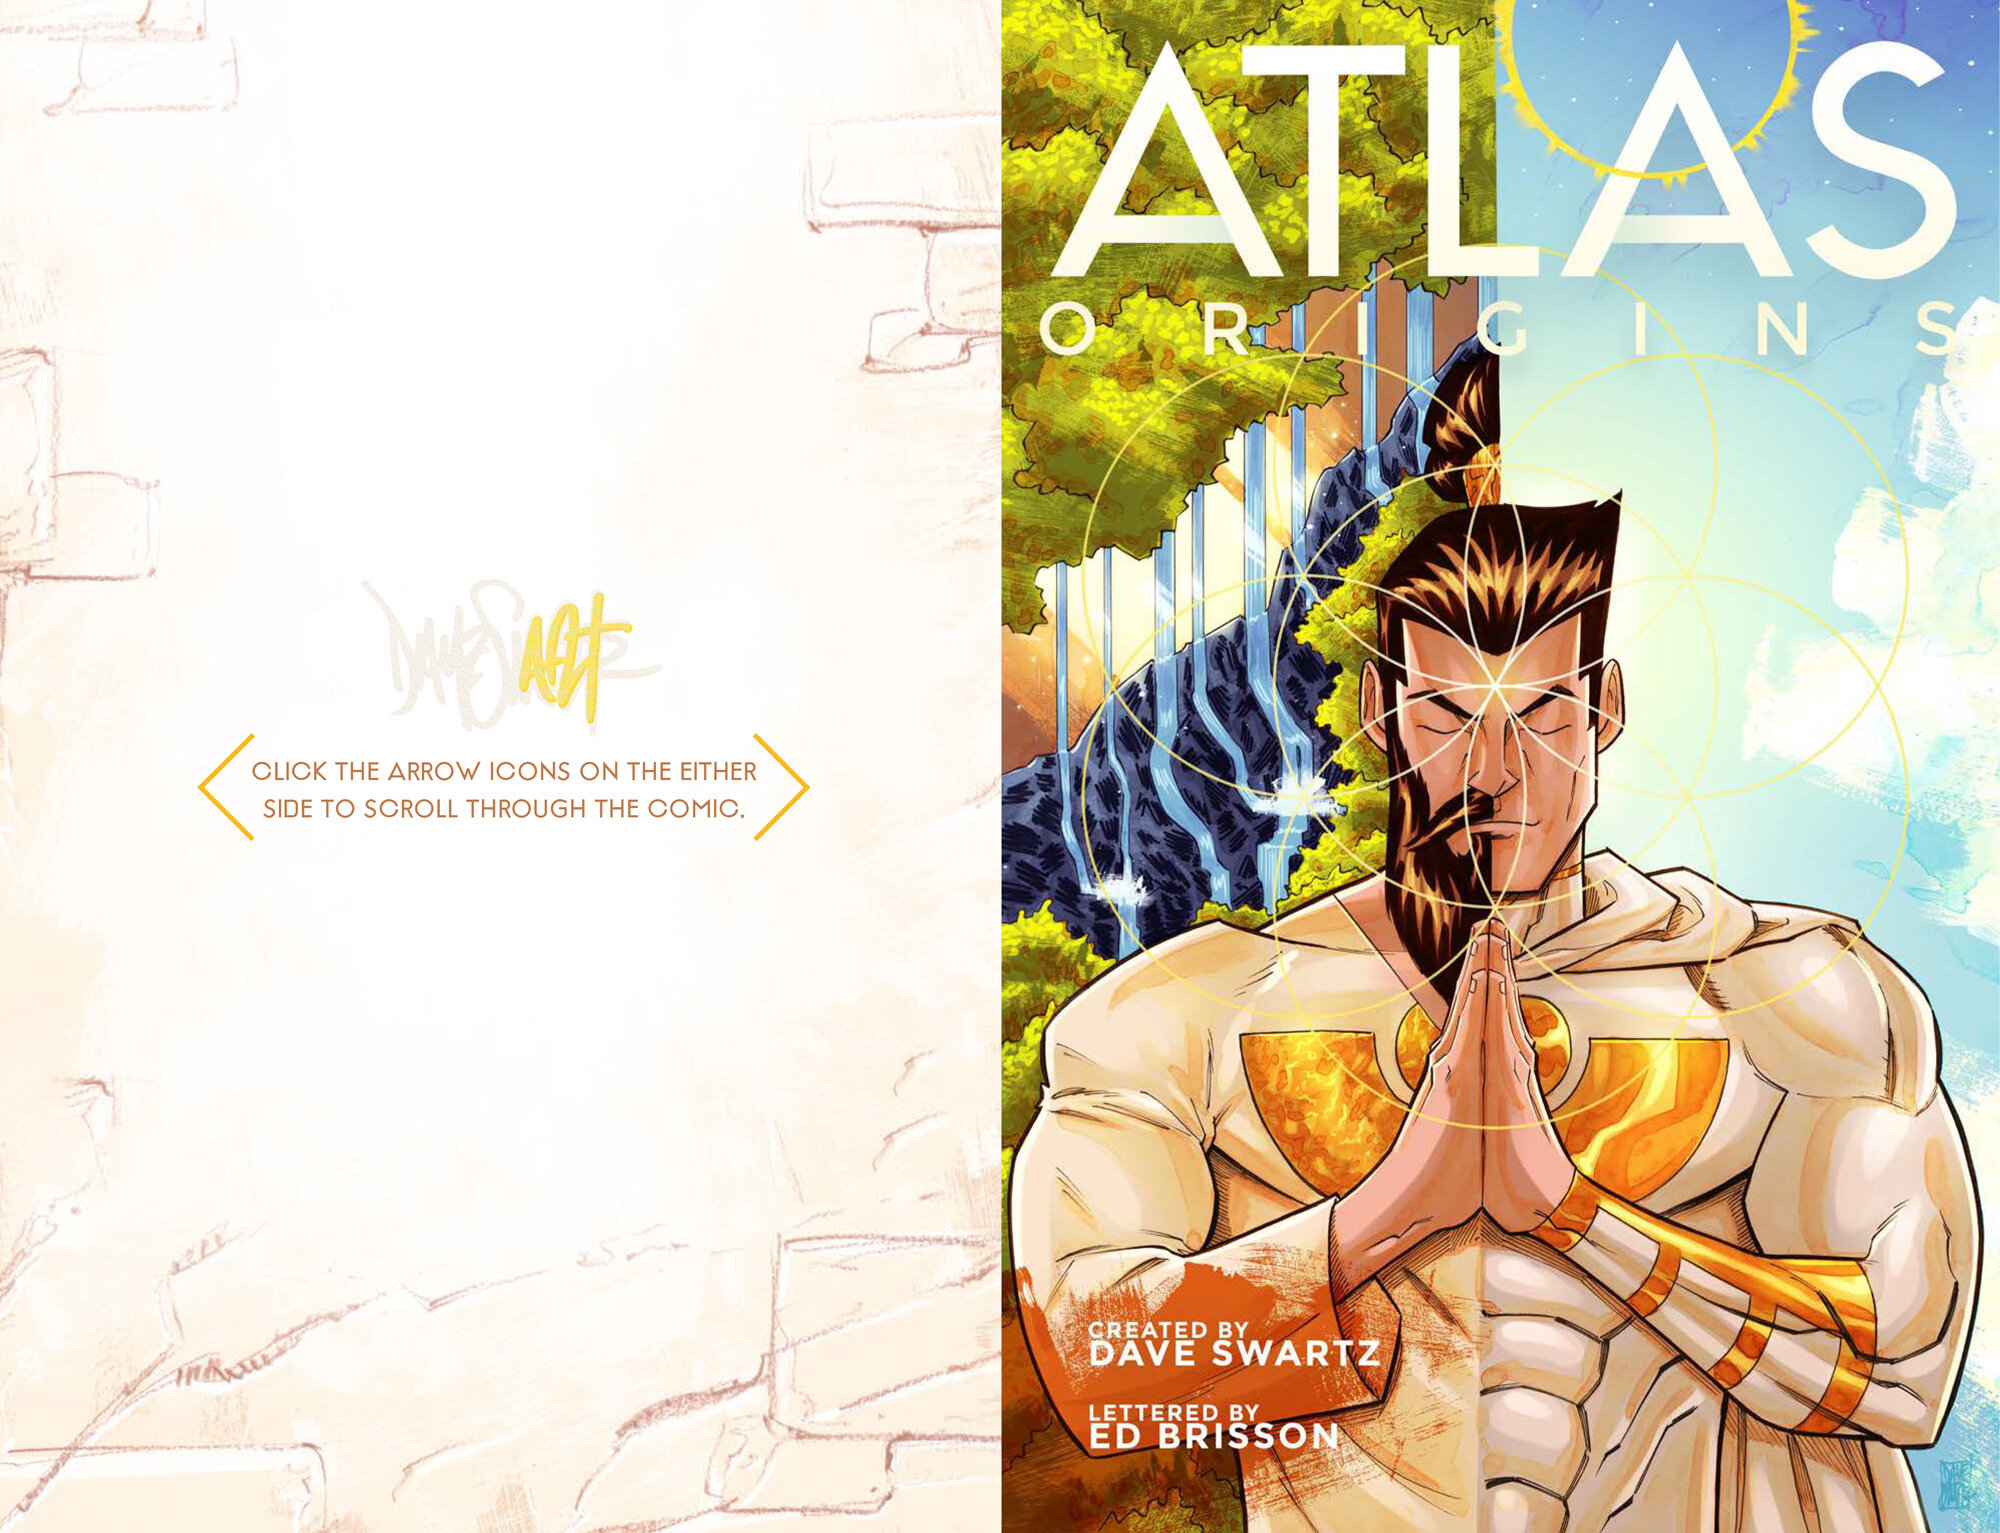 Atlas:ORIGINS Cover - Dave Swartz Art